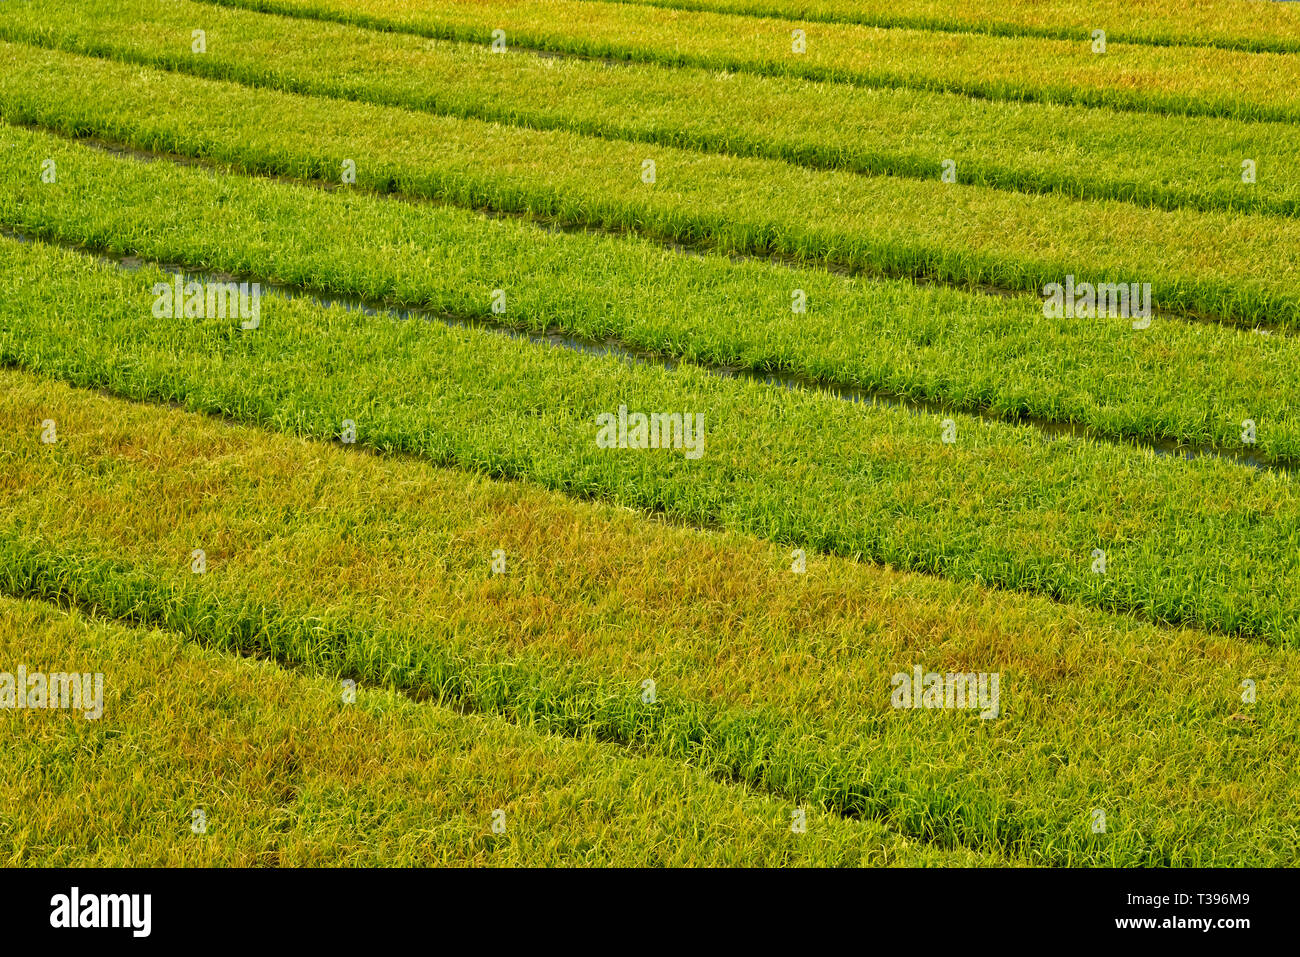 Golden rice paddy, Khulna Division, Bangladesh Stock Photo